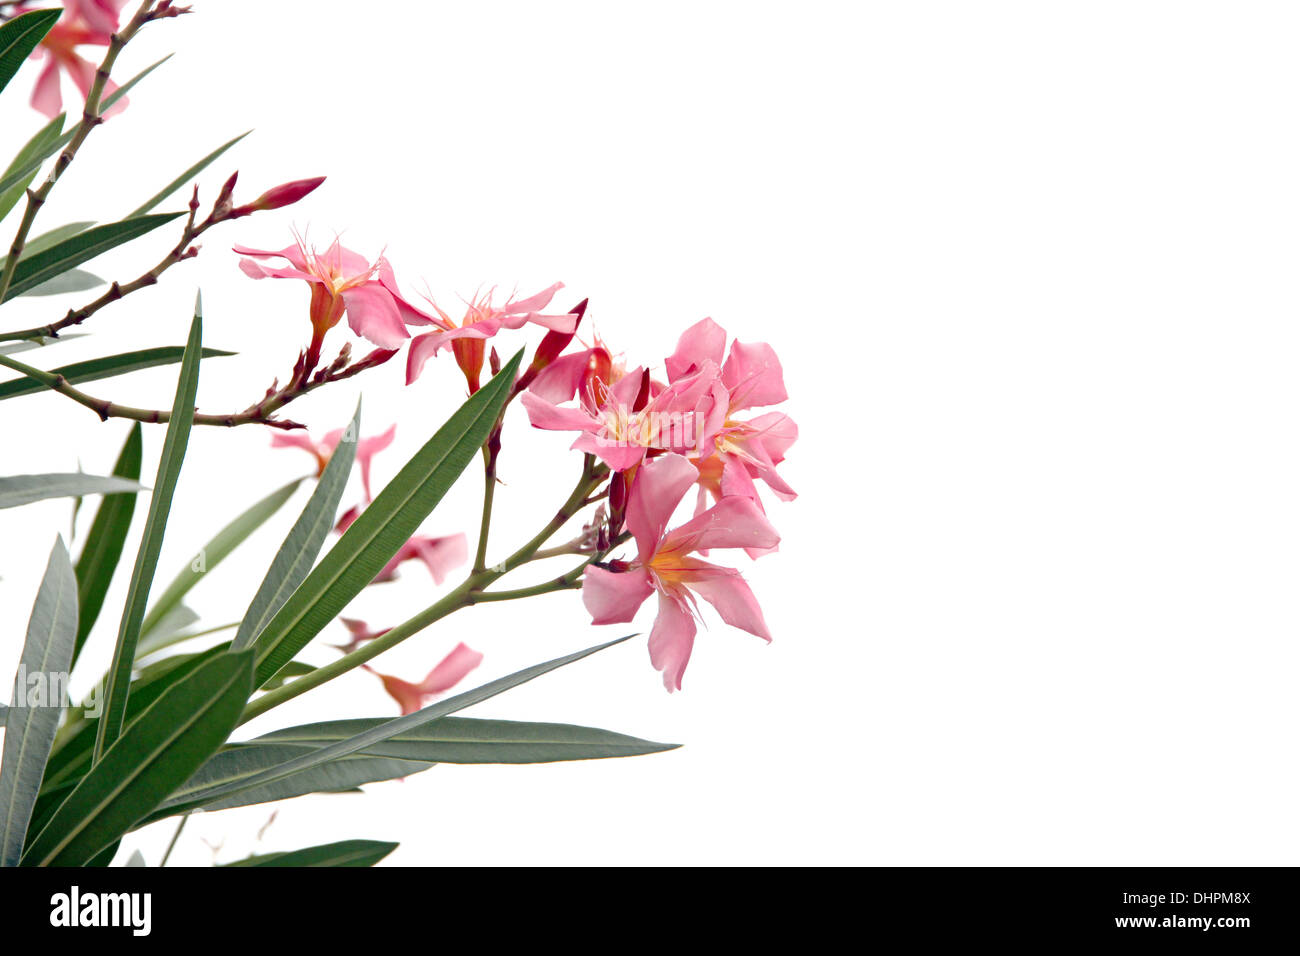 Fokus der Bild rosa Blume im Garten auf weißem Hintergrund. Stockfoto